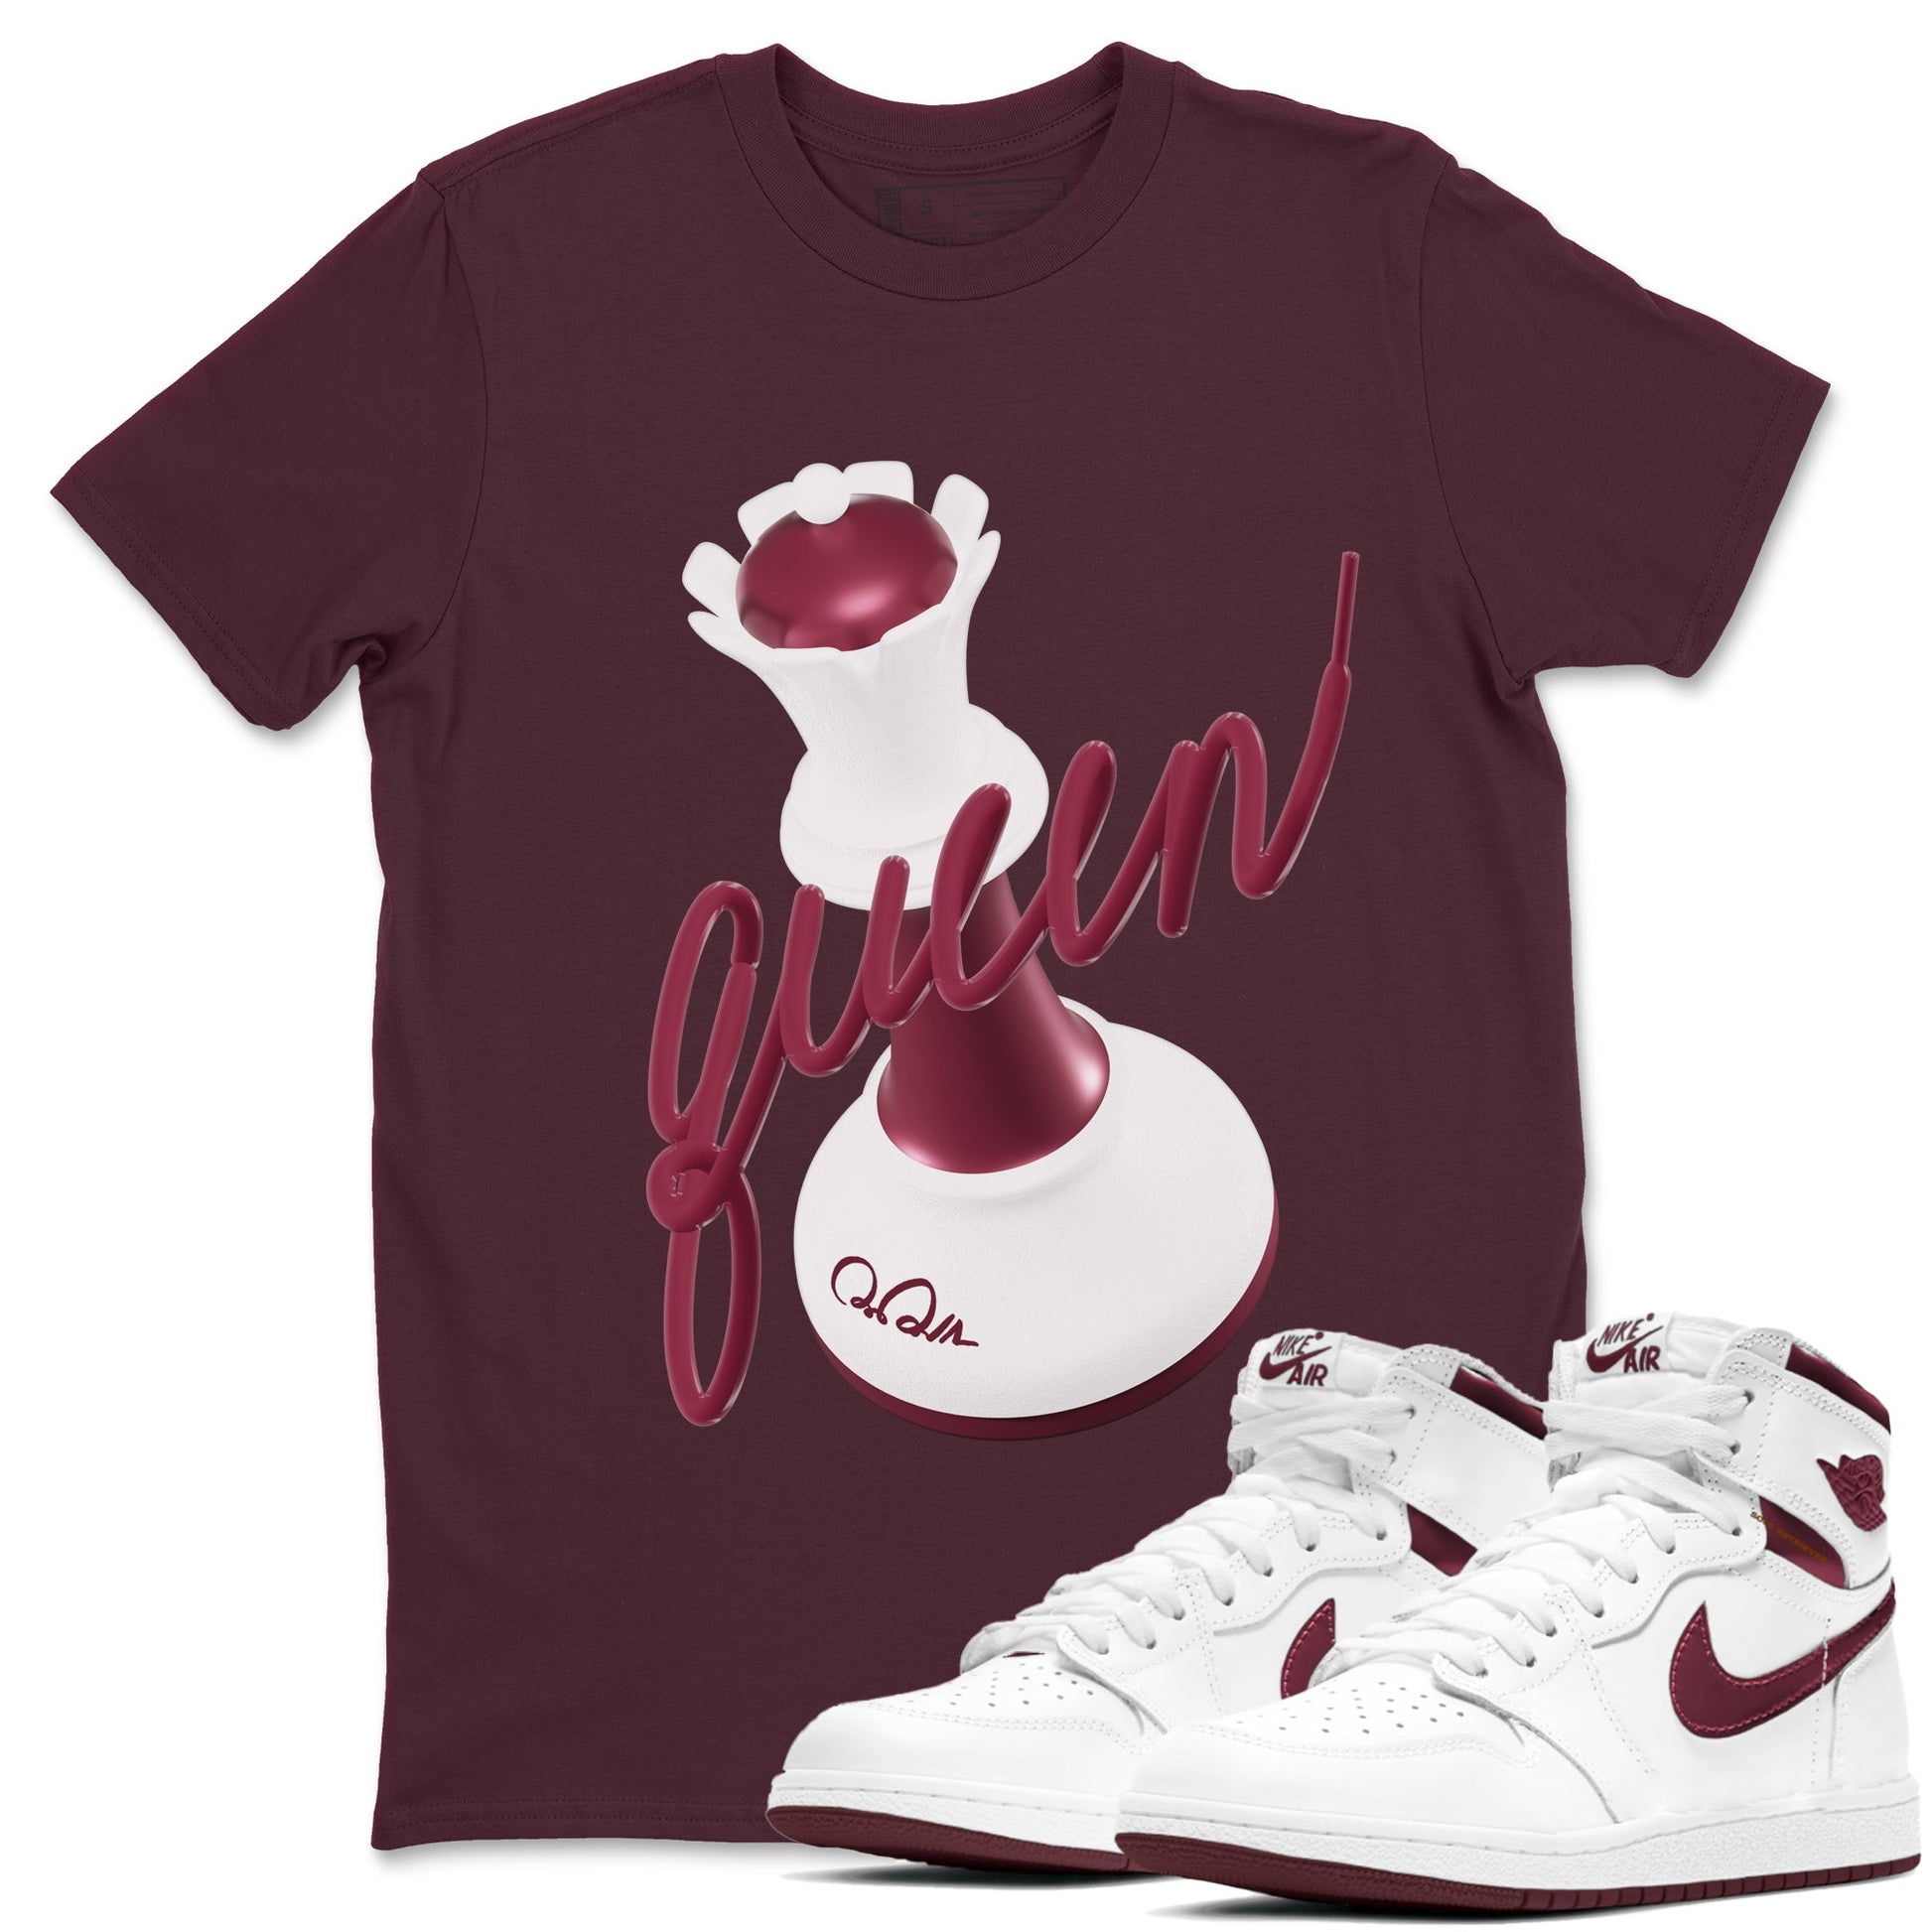 1s Metallic Burgundy shirt to match jordans 3D Queen sneaker tees AJ1 Metallic Burgundy SNRT Sneaker Release Tees Unisex Maroon 1 T-Shirt